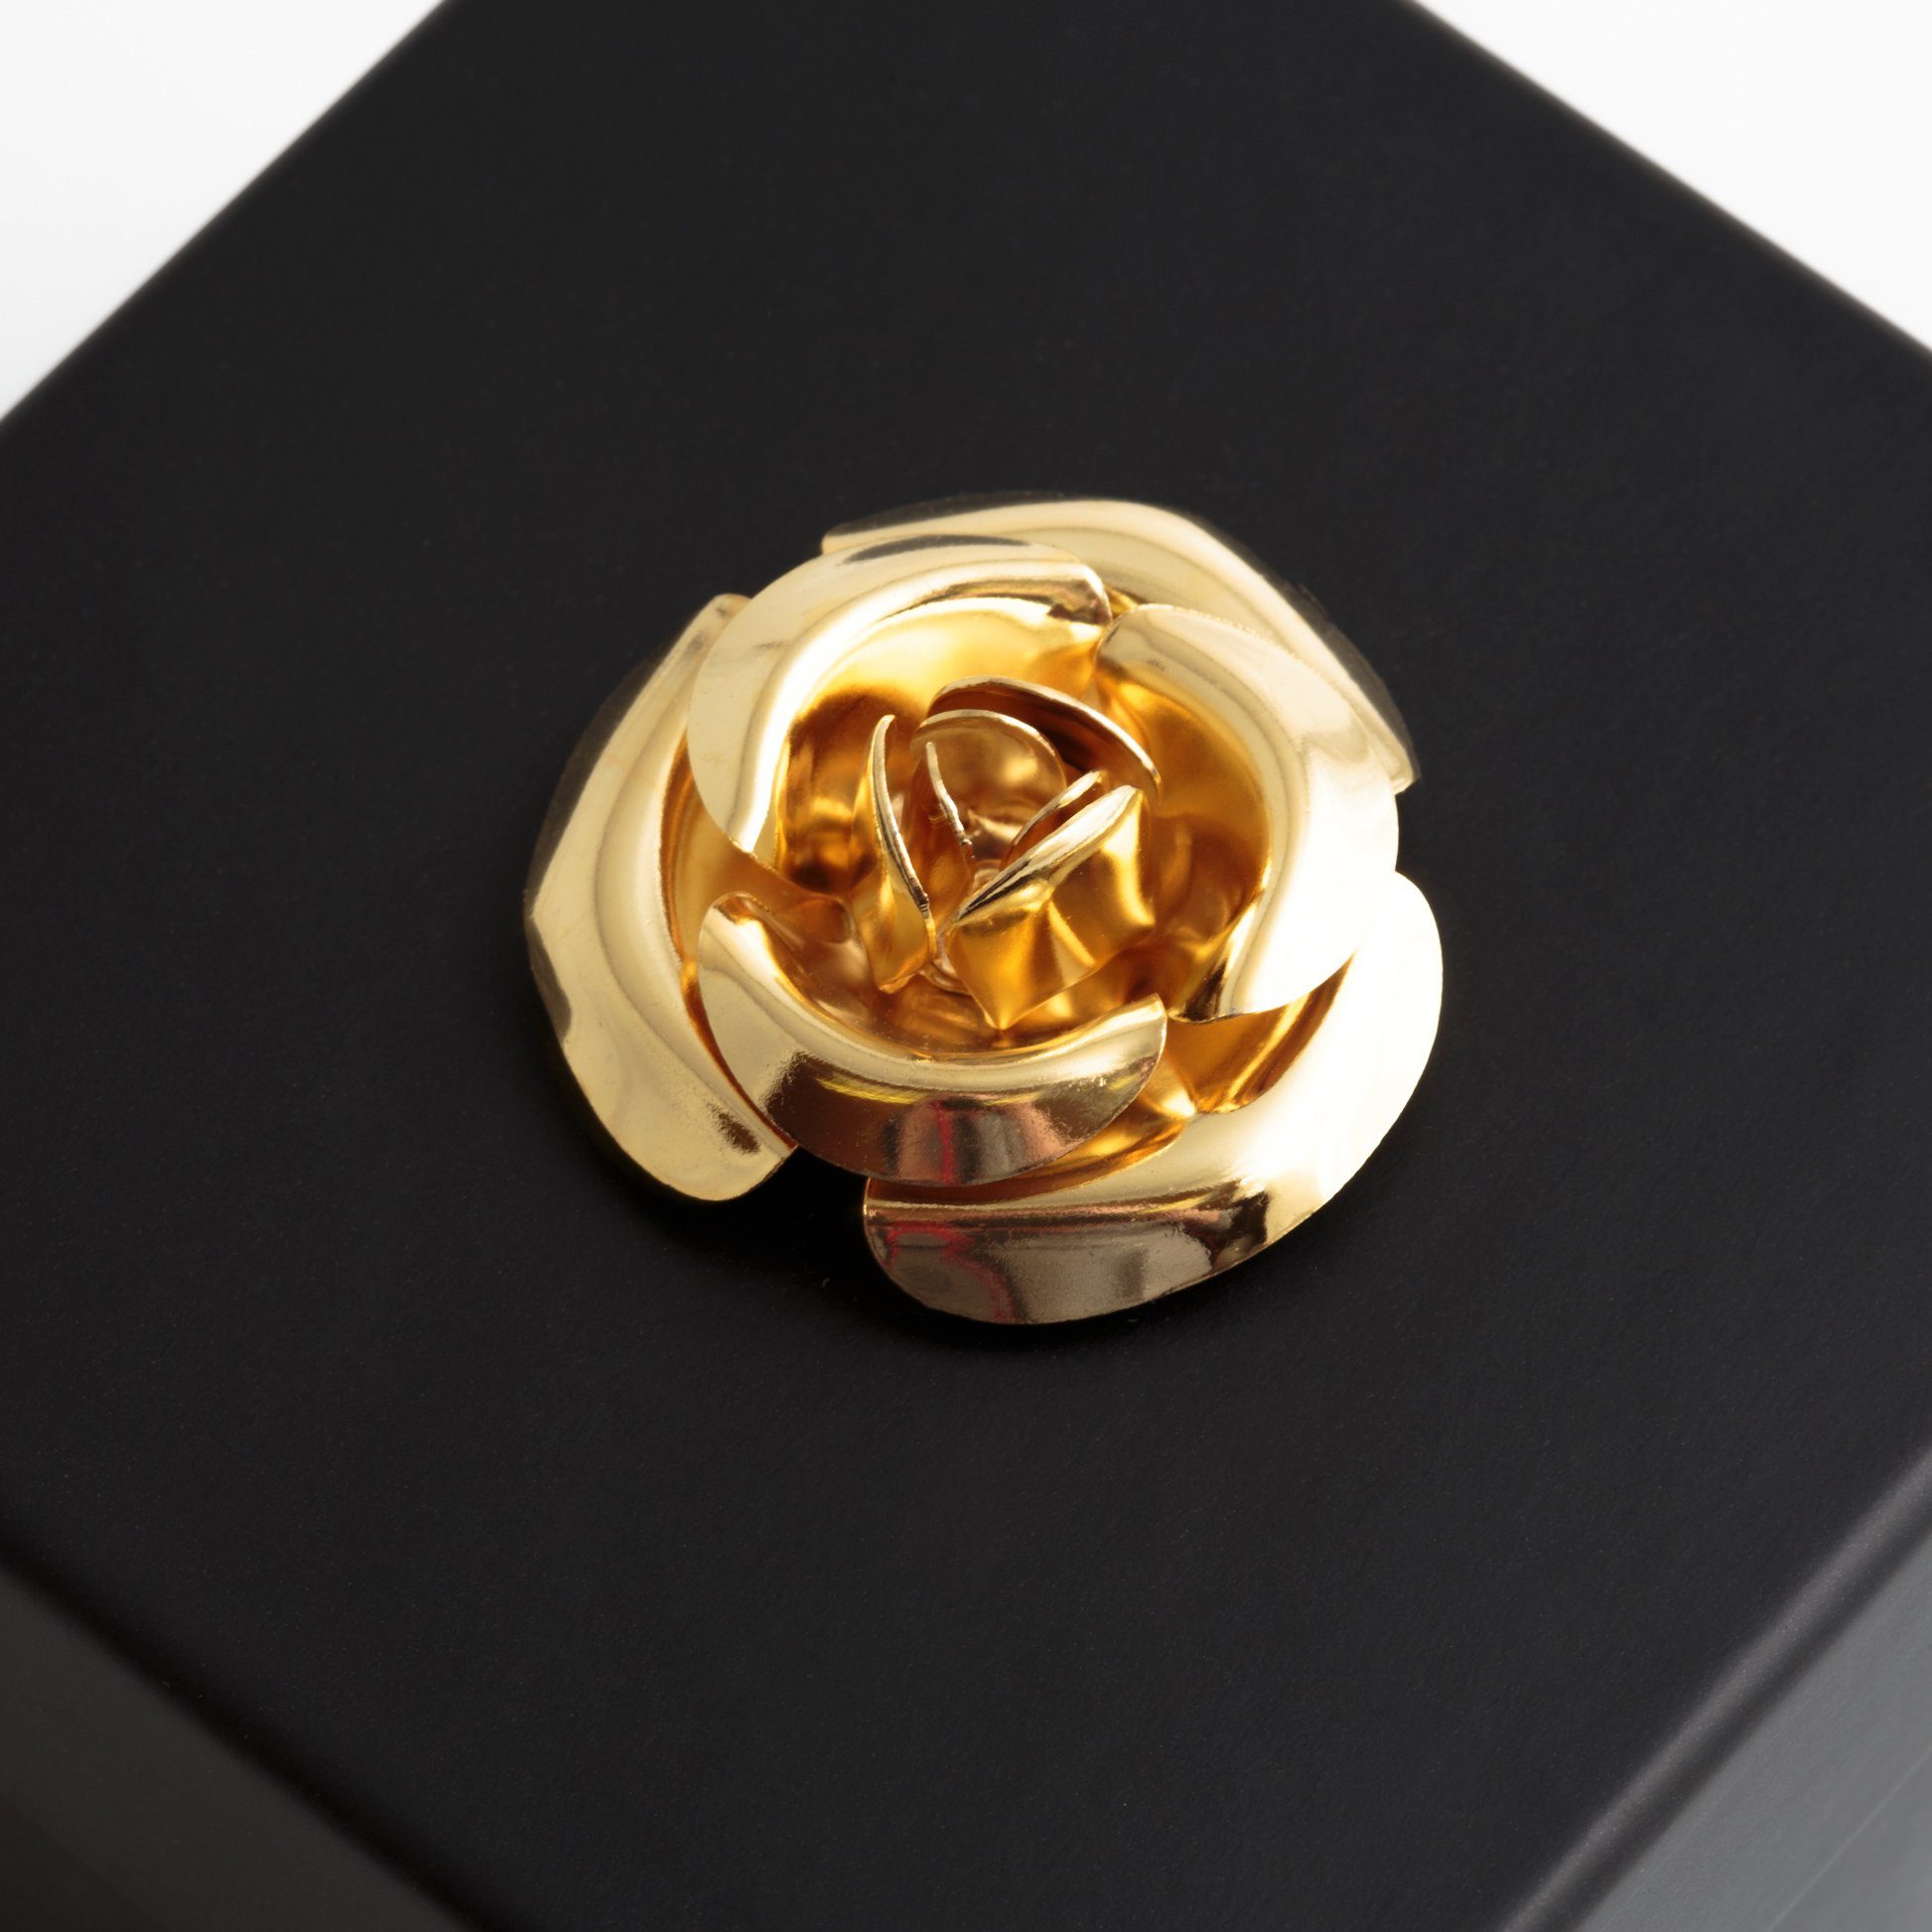 Echte schwarz 1 Rose, Kunstblume SCHULZ in Heidelberg, cm, Jahre mit haltbar Blumendeckel 3 Rose Höhe 3 Box Infinity bis haltbar ROSEMARIE Jahre 6.5 Rose zu Rose